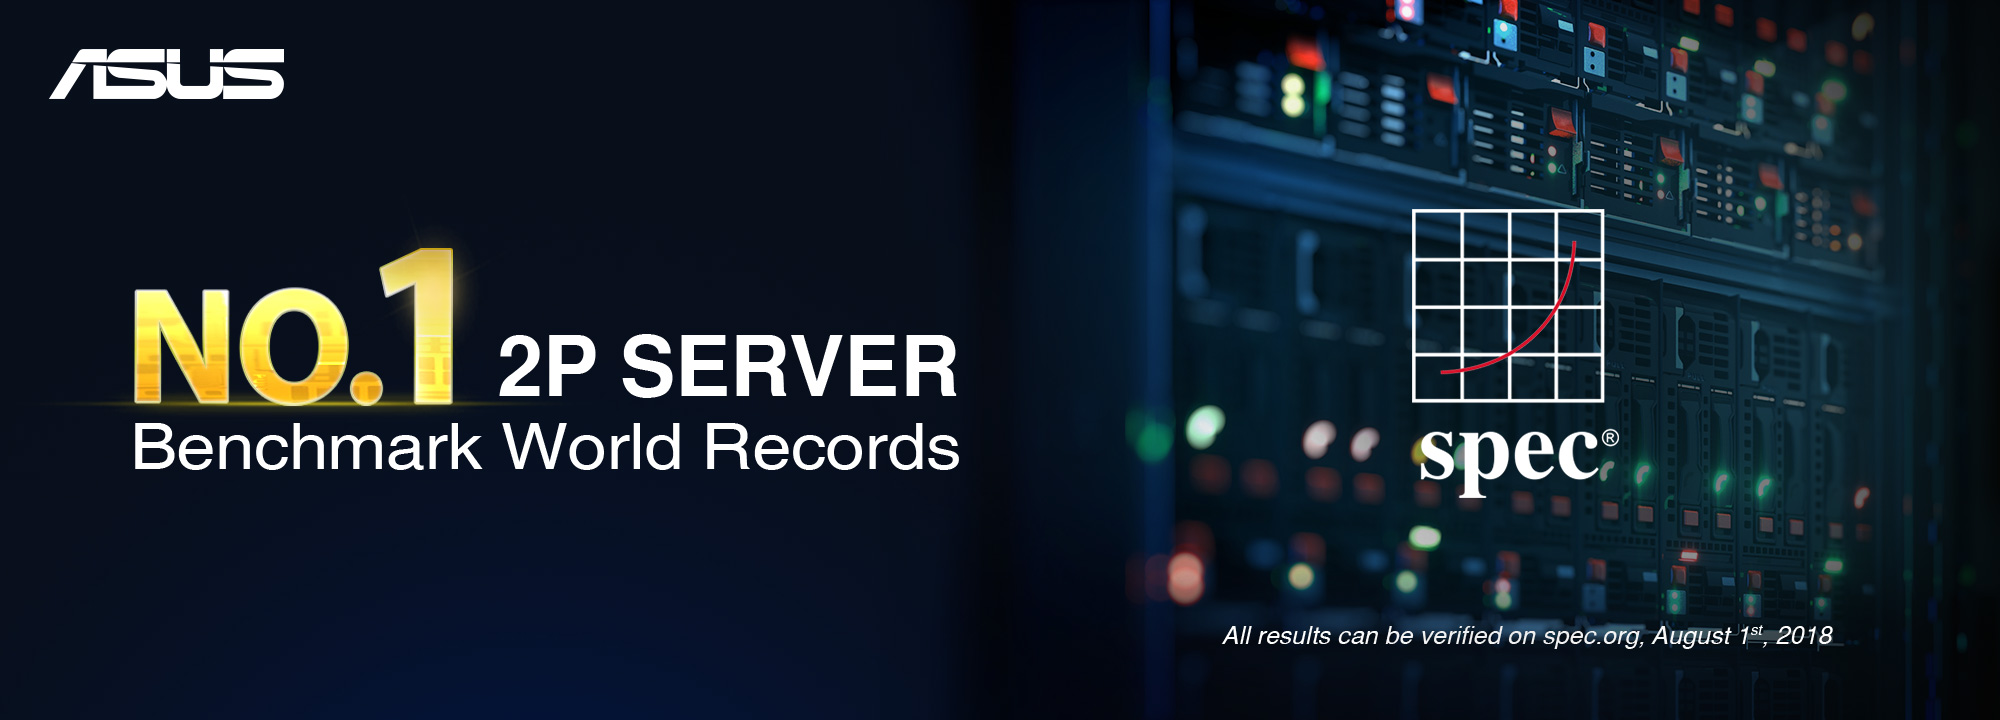 no 1 2p server banner withlogo 2000x720 ASUS ประกาศสถิติใหม่ของการเป็น 2P Server ที่มีประสิทธิภาพเร็วที่สุดในโลกและยังเป็นเจ้าของสถิติการทดสอบจาก SPEC CPU ถึง 67 อย่าง